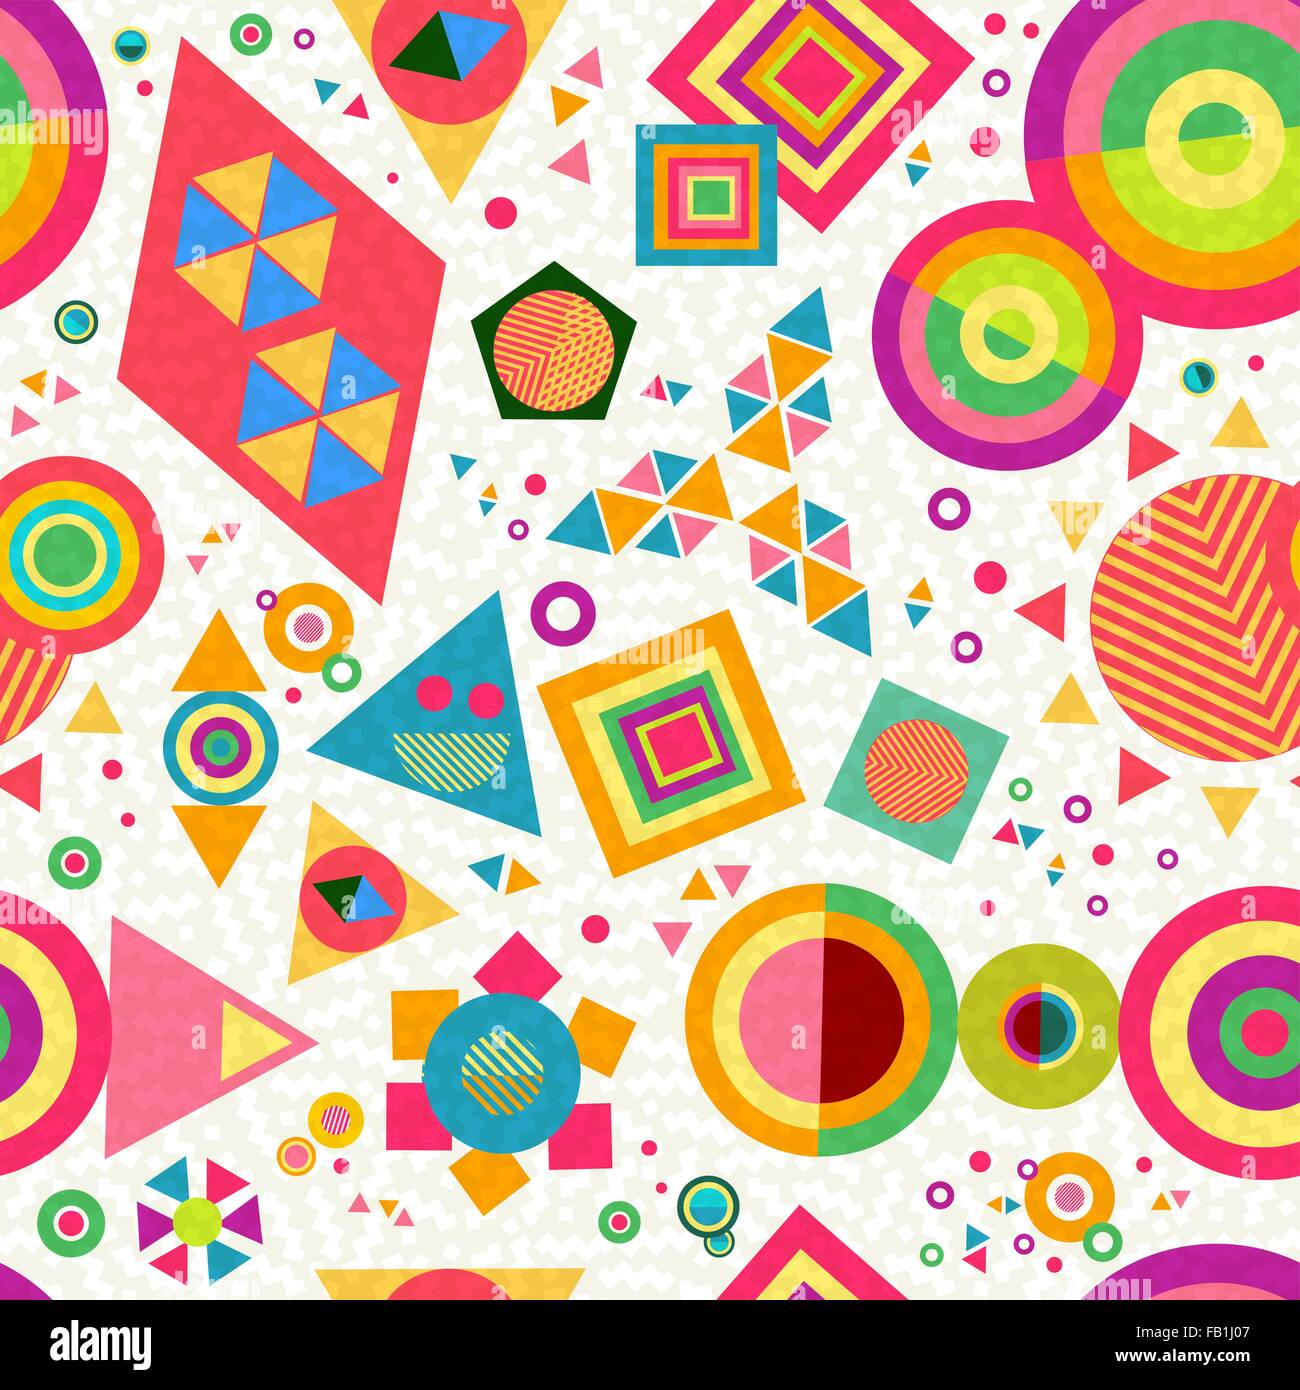 Motif de fond transparent avec des formes géométriques et motifs abstraits colorés de style pop dynamique. Vecteur EPS10. Illustration de Vecteur